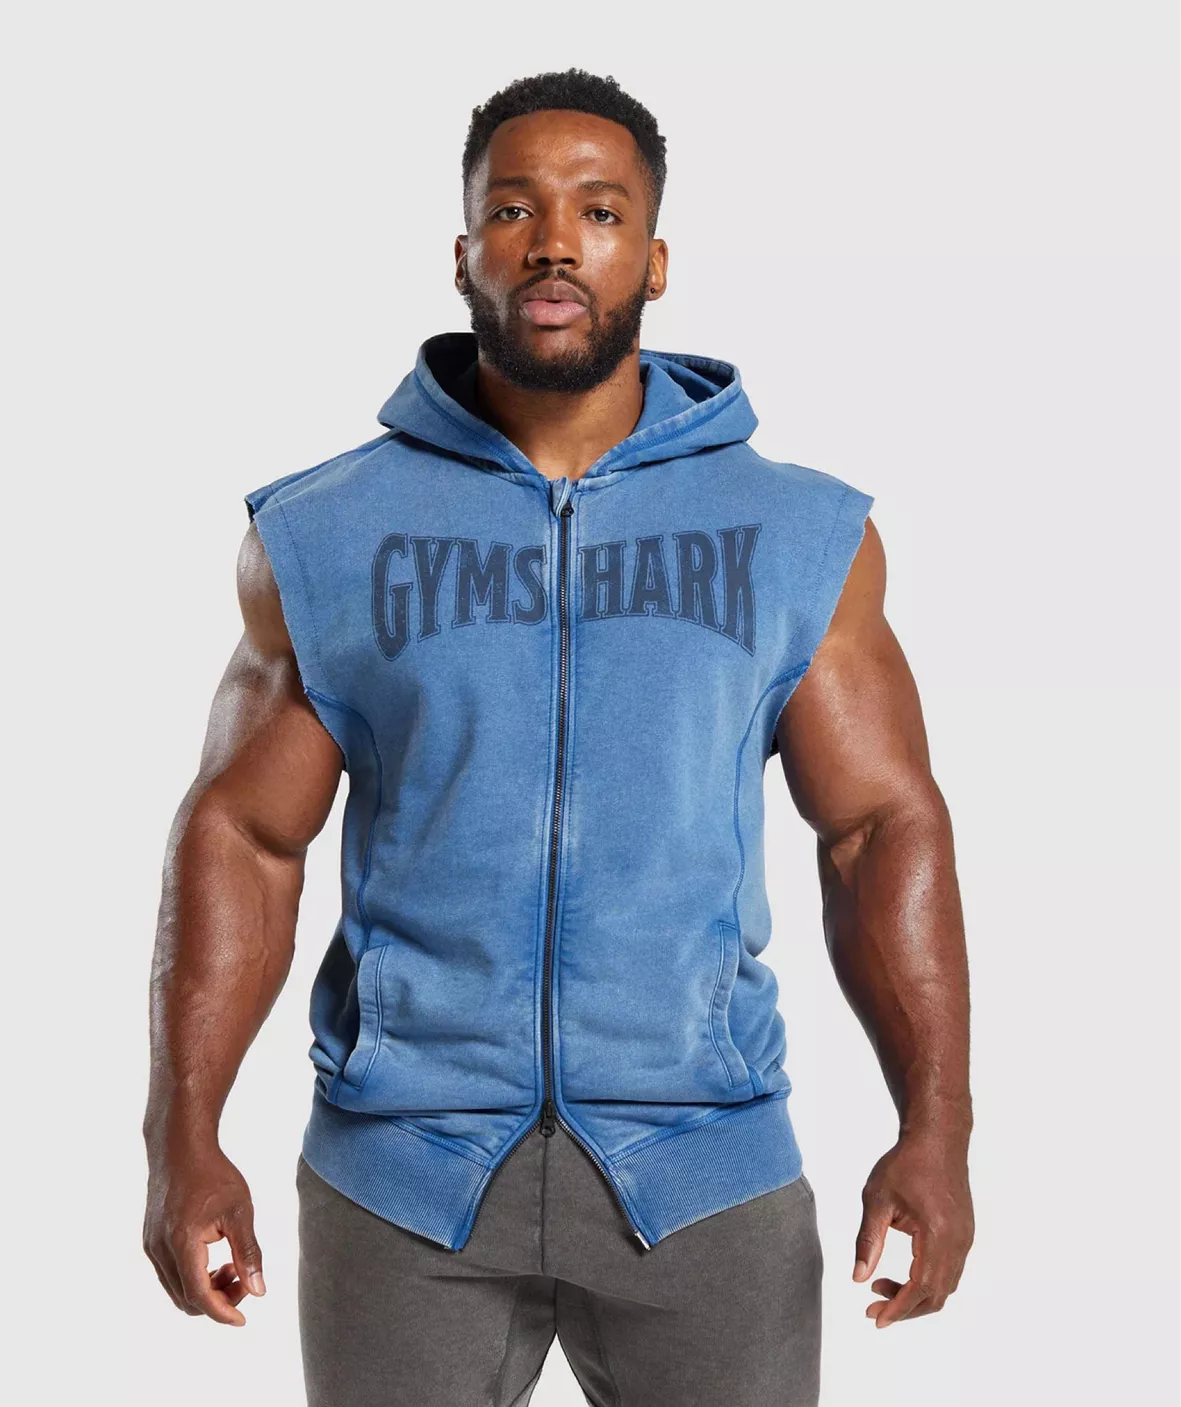 Gymshark Heavyweight Hoodie - Black